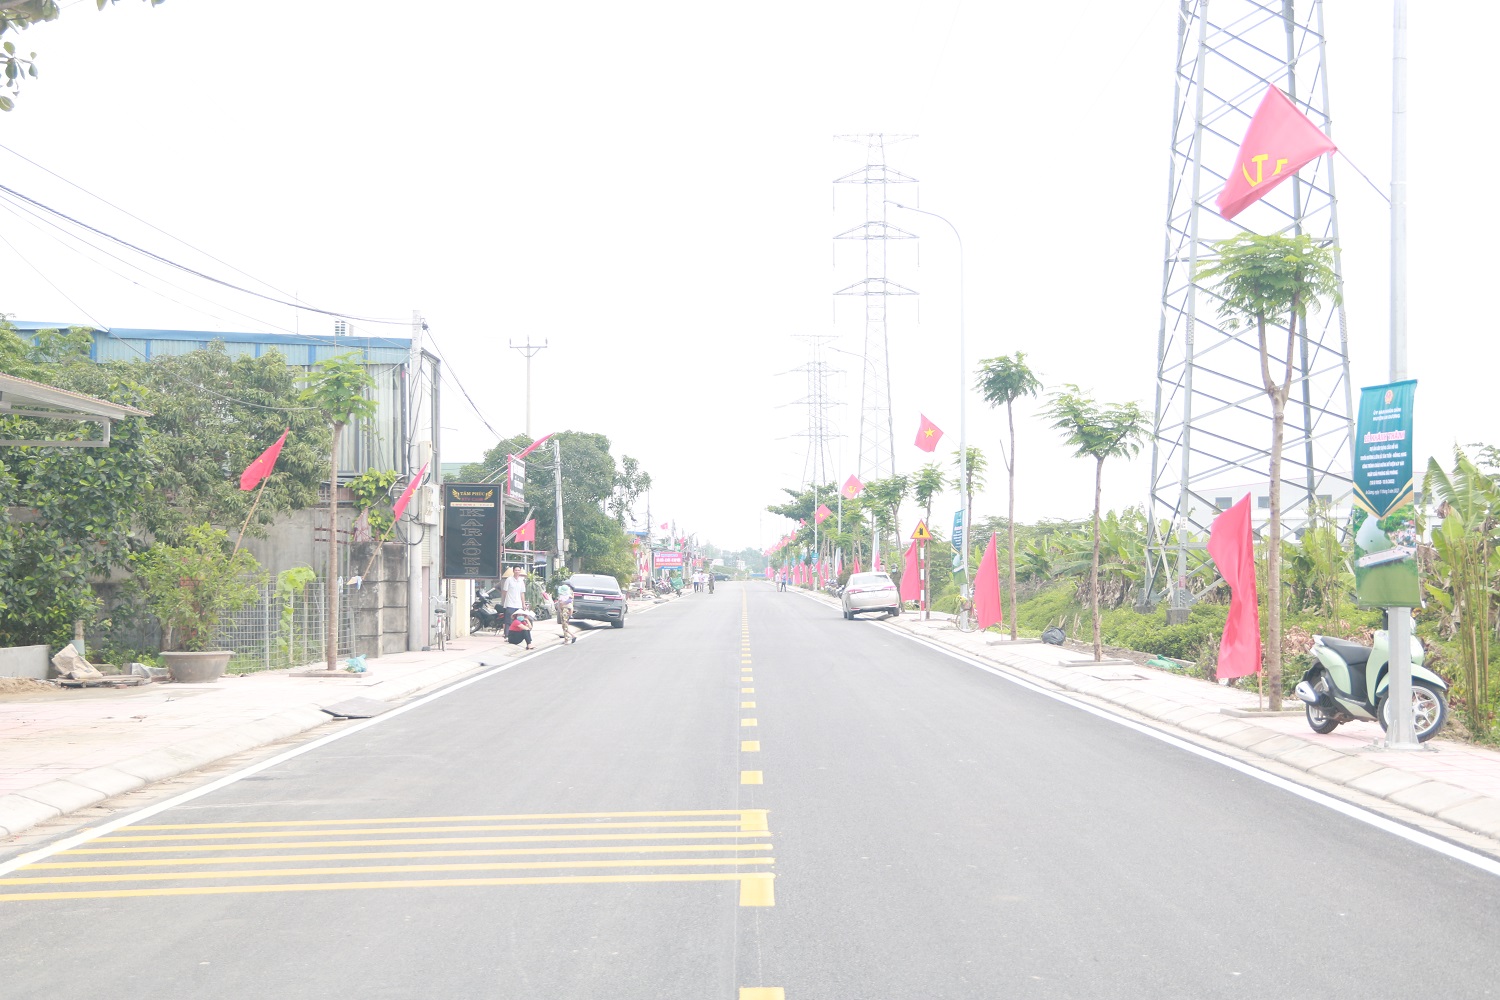 Sau hơn 6 tháng thi công dự án xây cầu Hỗ và cải tạo tuyến đường liên xã Hồng Phong- Tân Tiến được đưa vào sử dụng